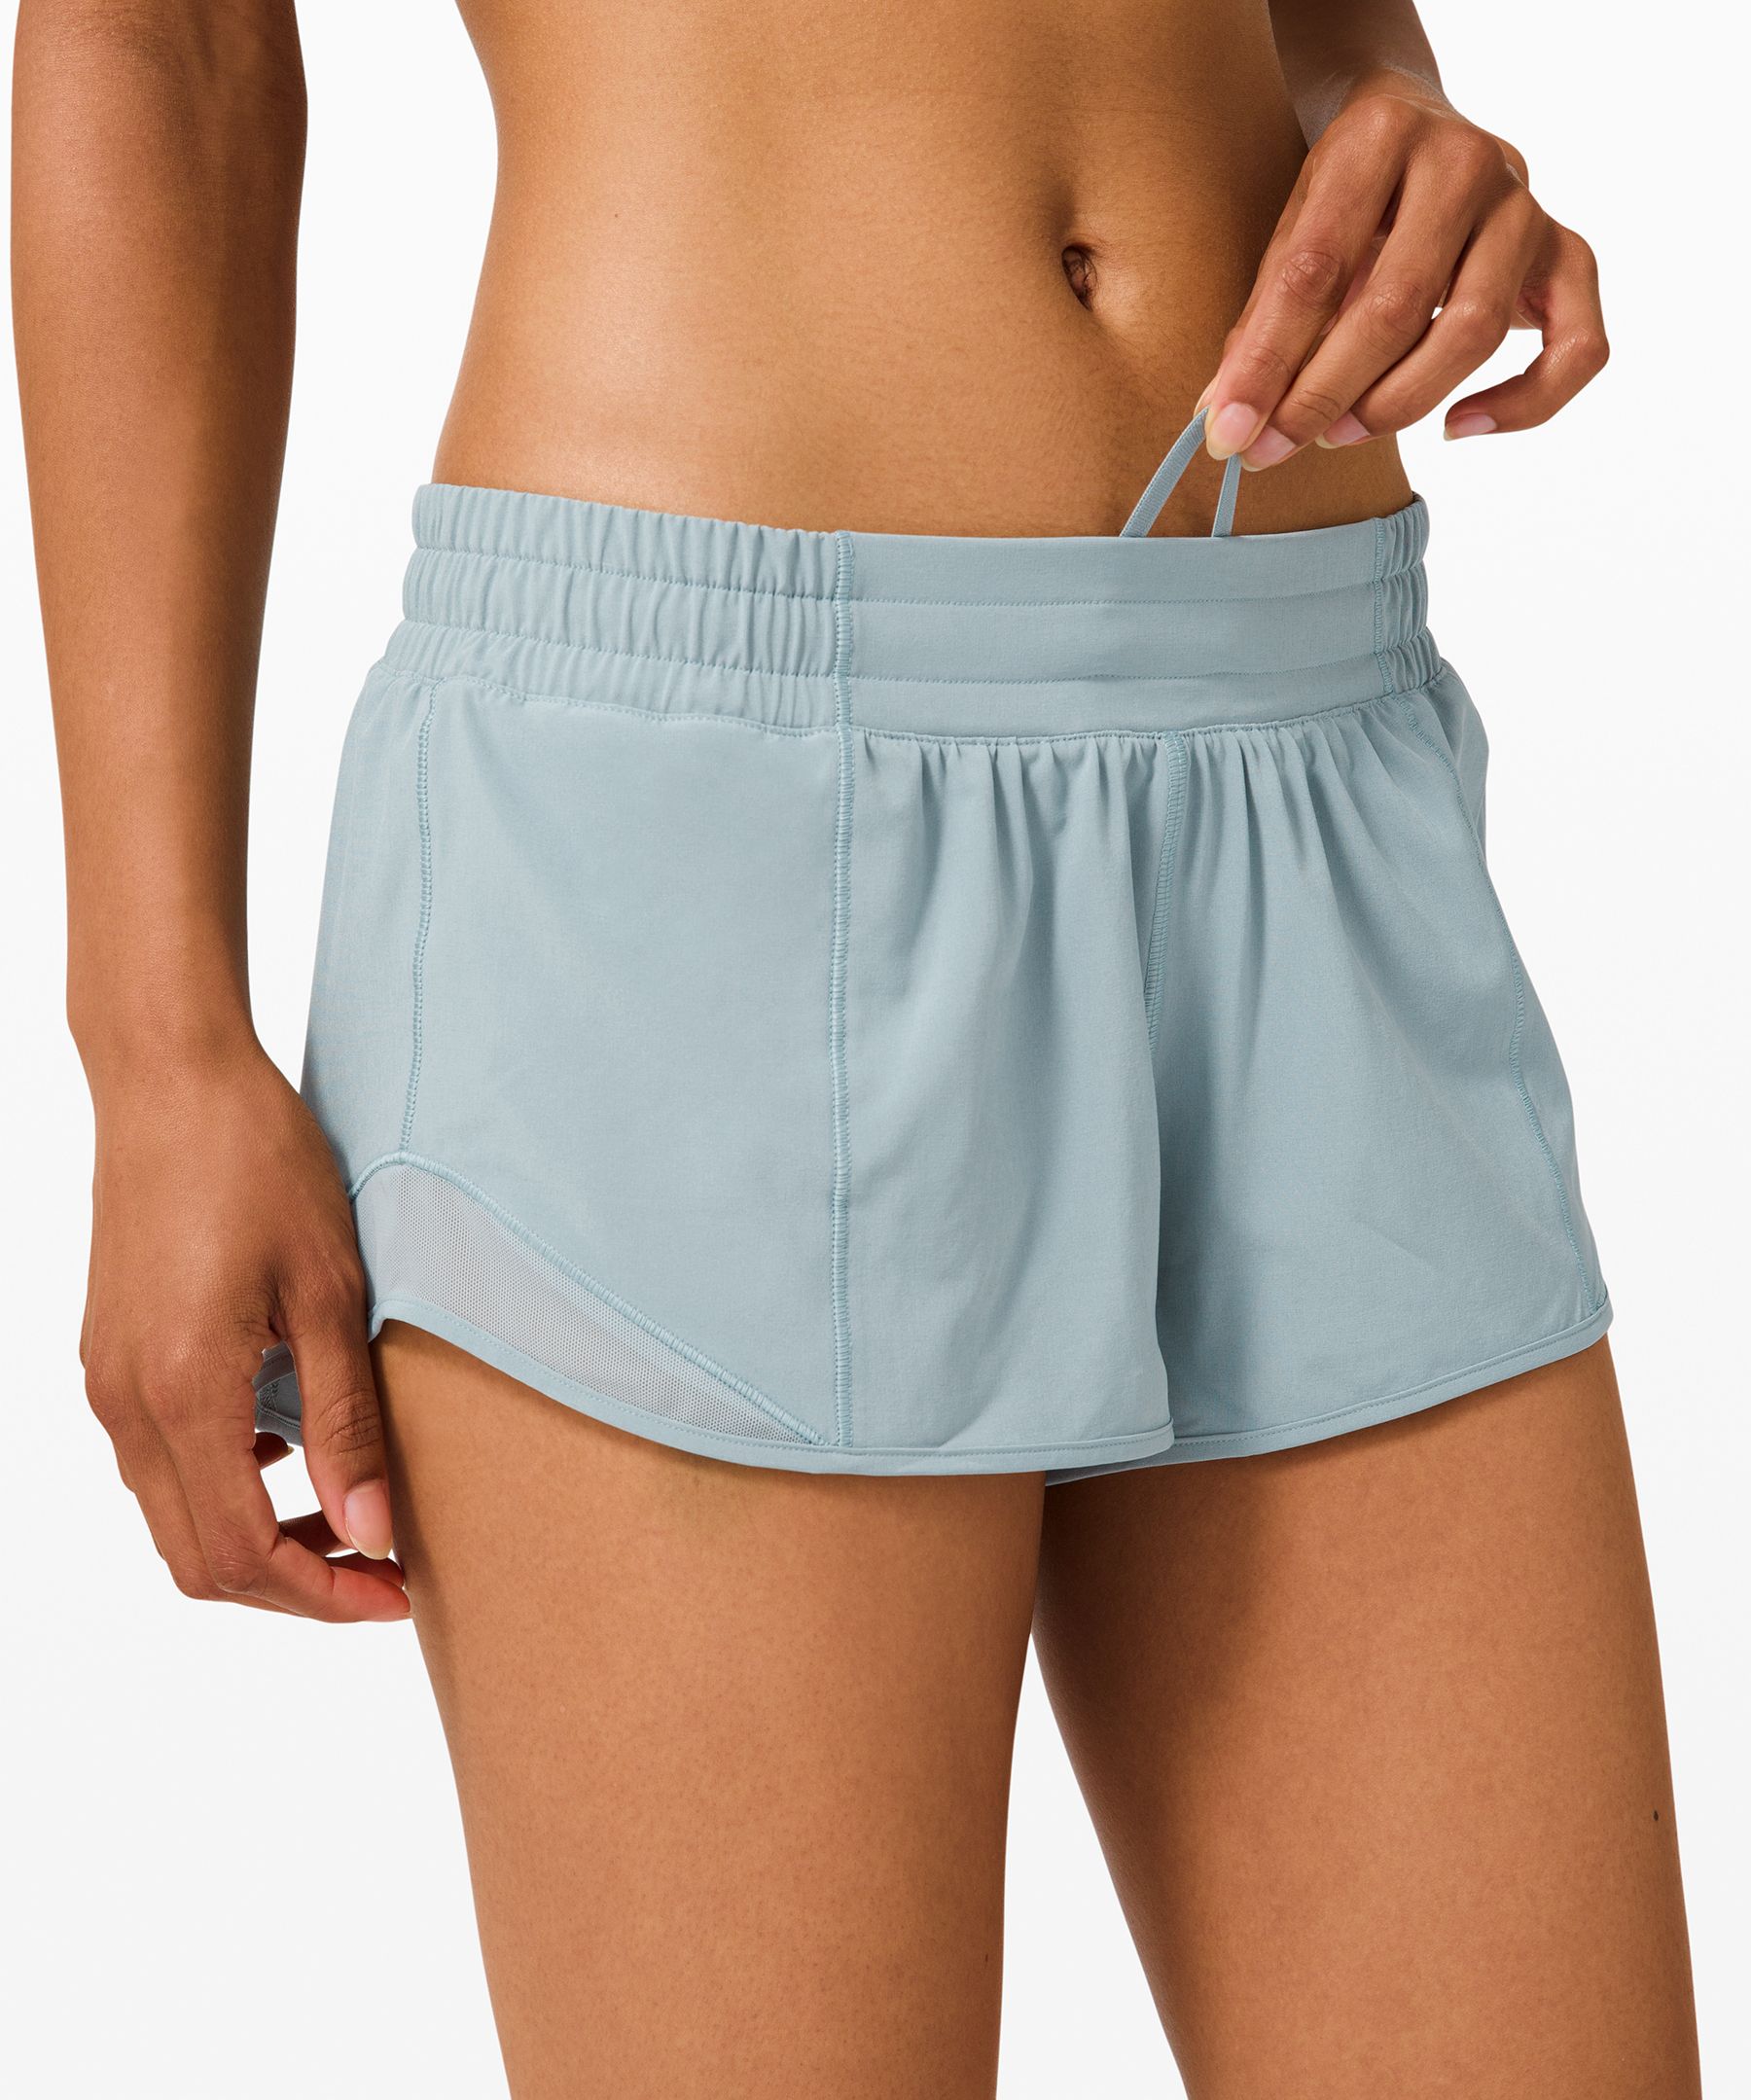 Lululemon Hotty Hot Low-rise Lined Shorts 2.5